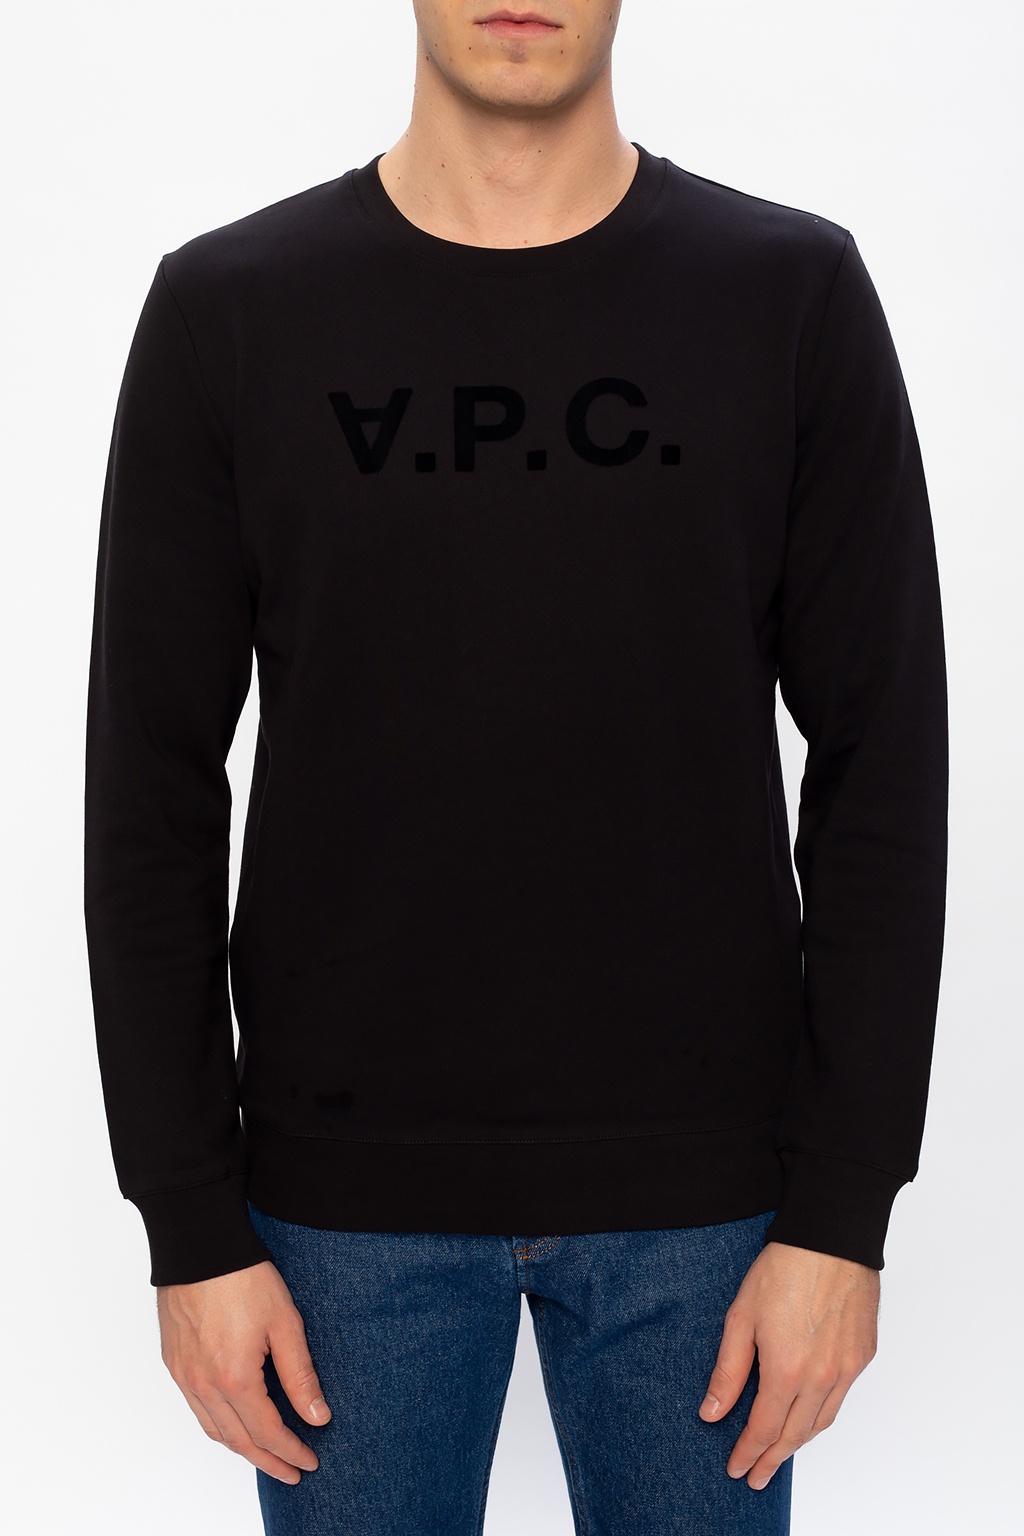 A.P.C. lauren sweatshirt with velvet logo